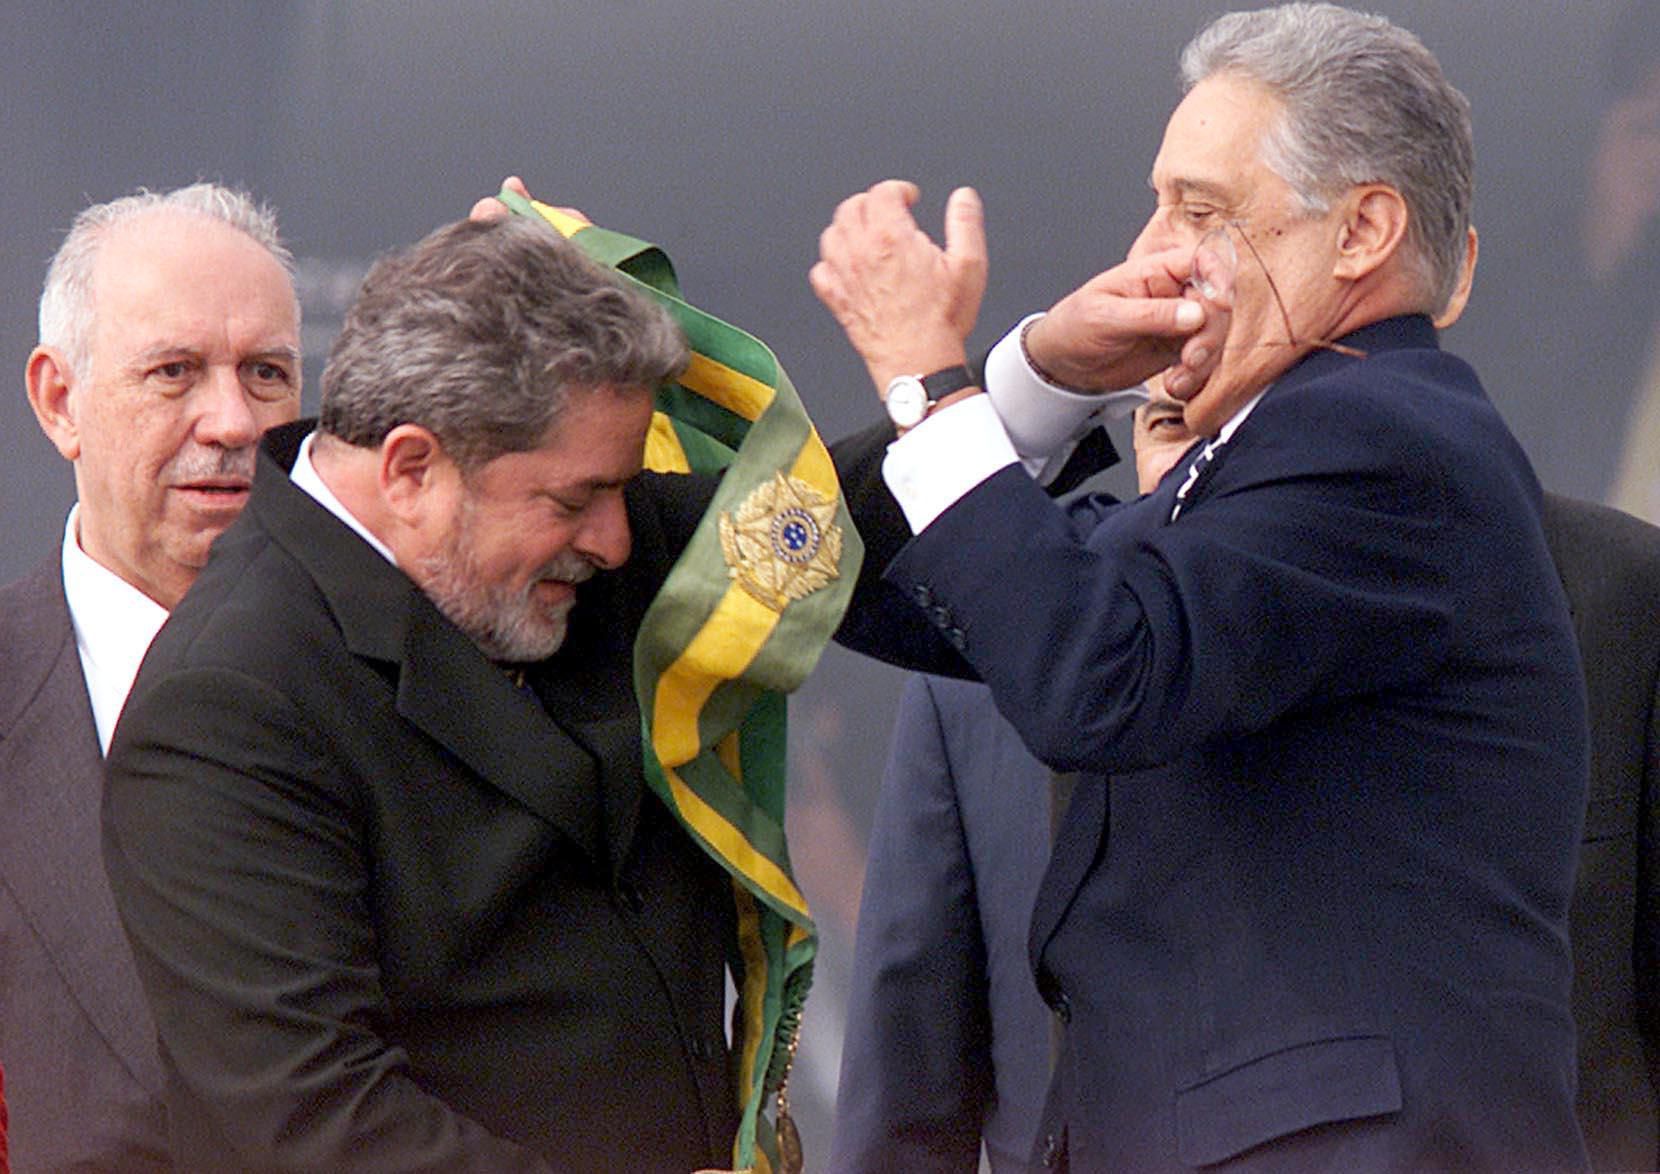 O Executivo manteve condições de aprovar projetos nas gestões de <b>Lula</b>, eleito com uma coalizão mais heterogênea que também incorporava o centro. O apelo popular por políticas de inclusão deram ao petista apoio consistente no Congresso